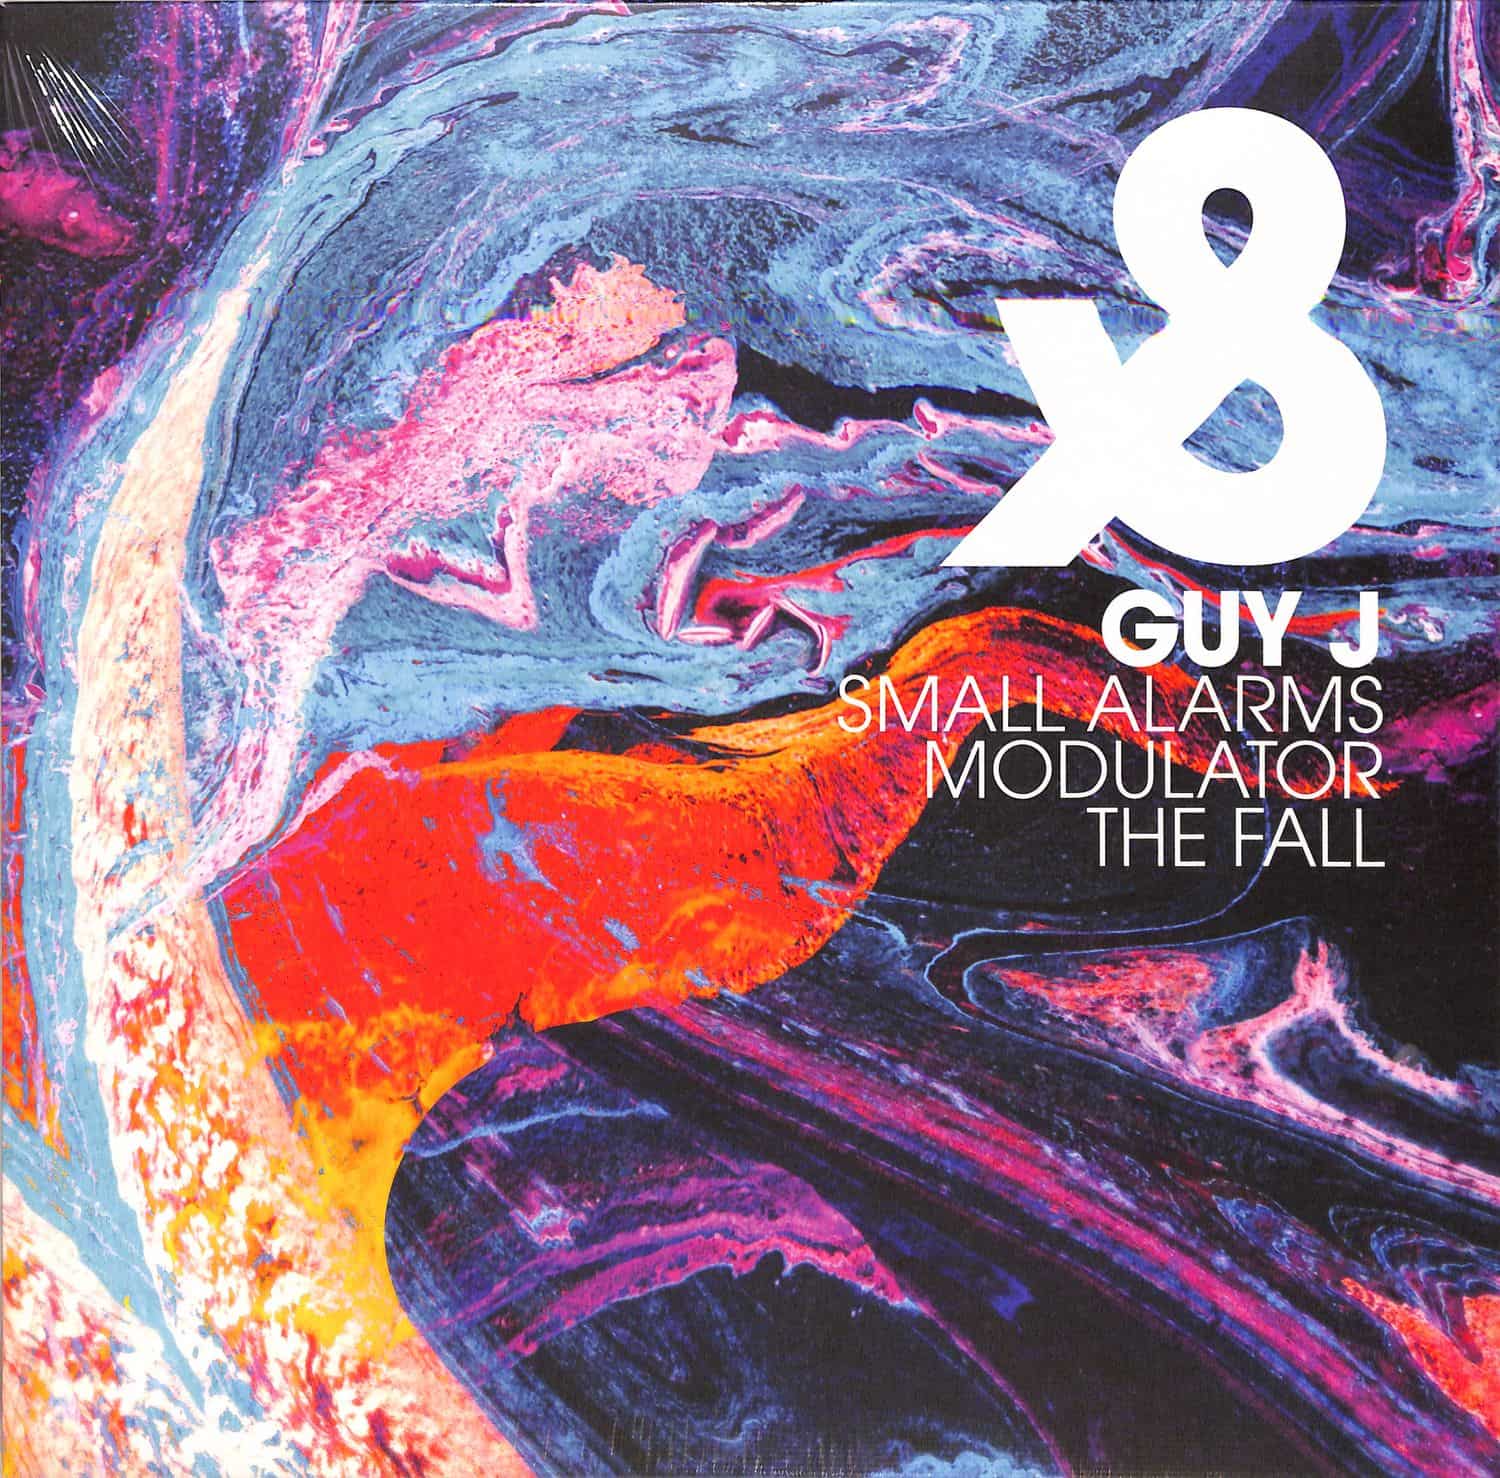 Guy J - SMALL ALARMS / MODULATOR / THE FALL 